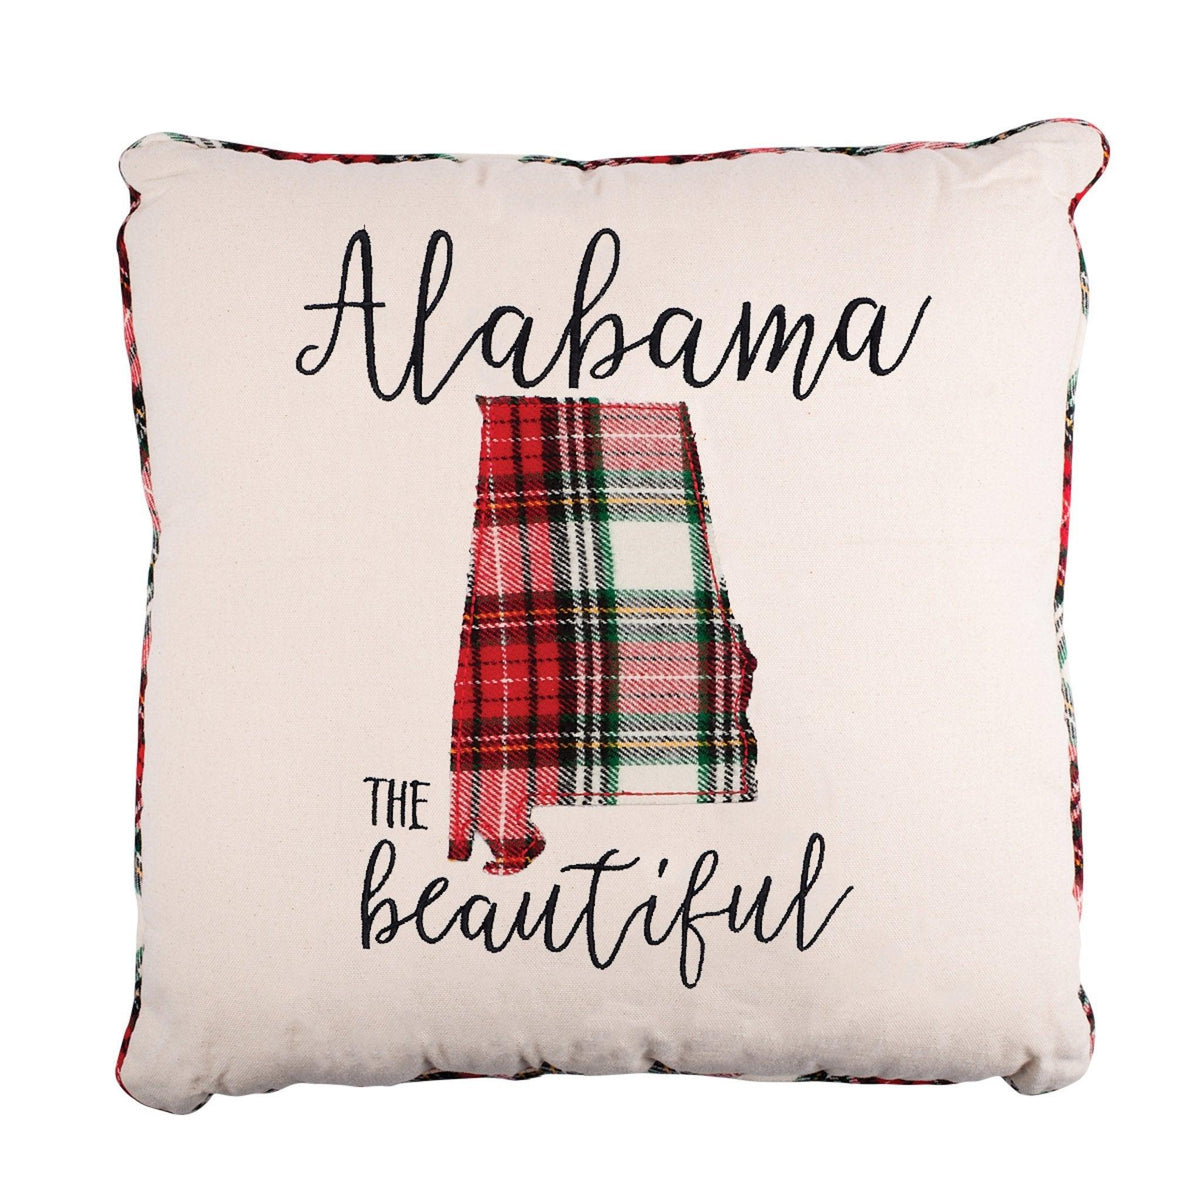 Alabama the Beautiful Pillow - GLORY HAUS 